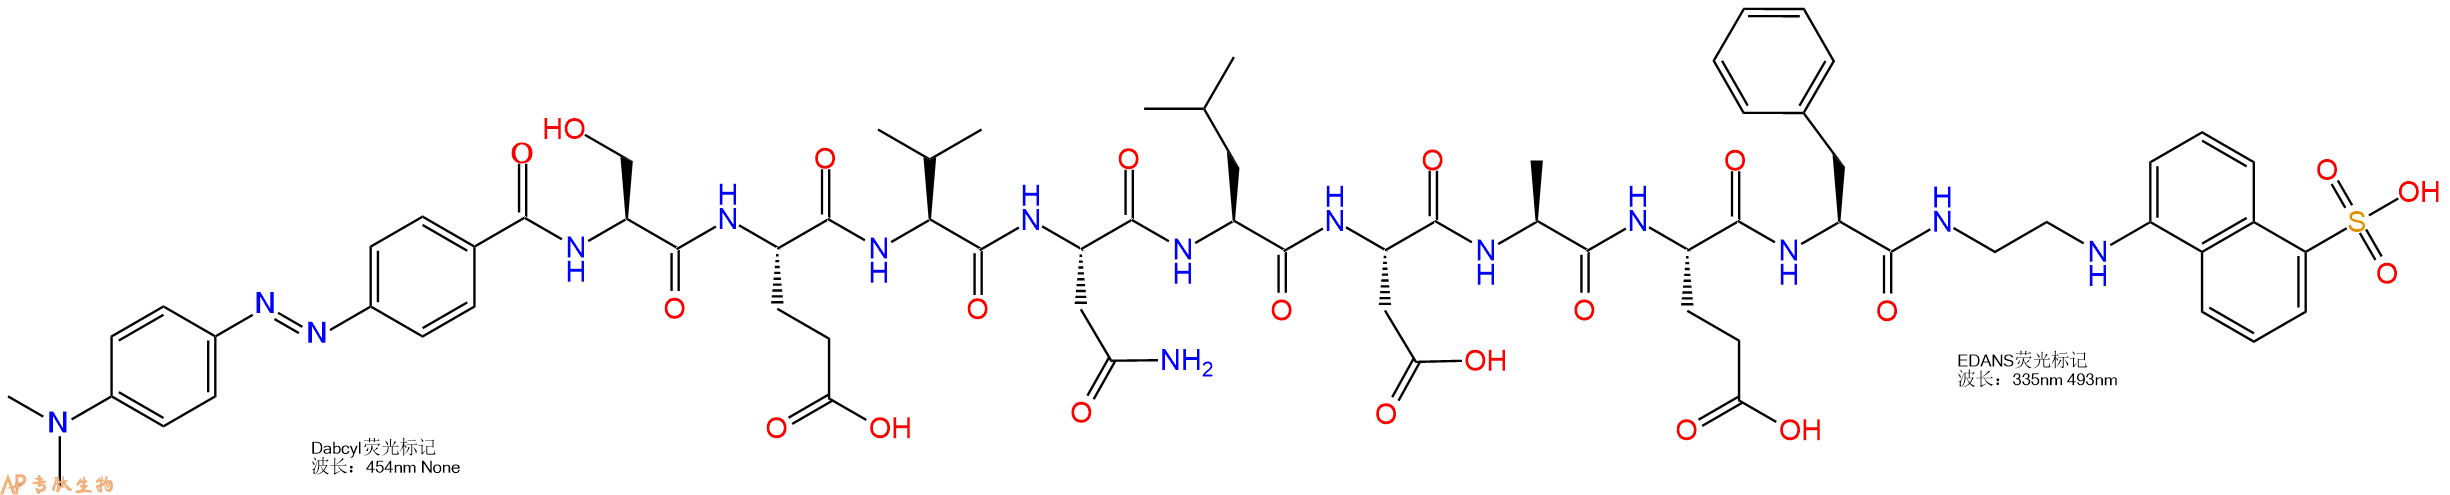 多肽生物产品DABCYL和EDANS双标记肽:DABCYL-SEVNLDAF-EDANS1802078-36-9